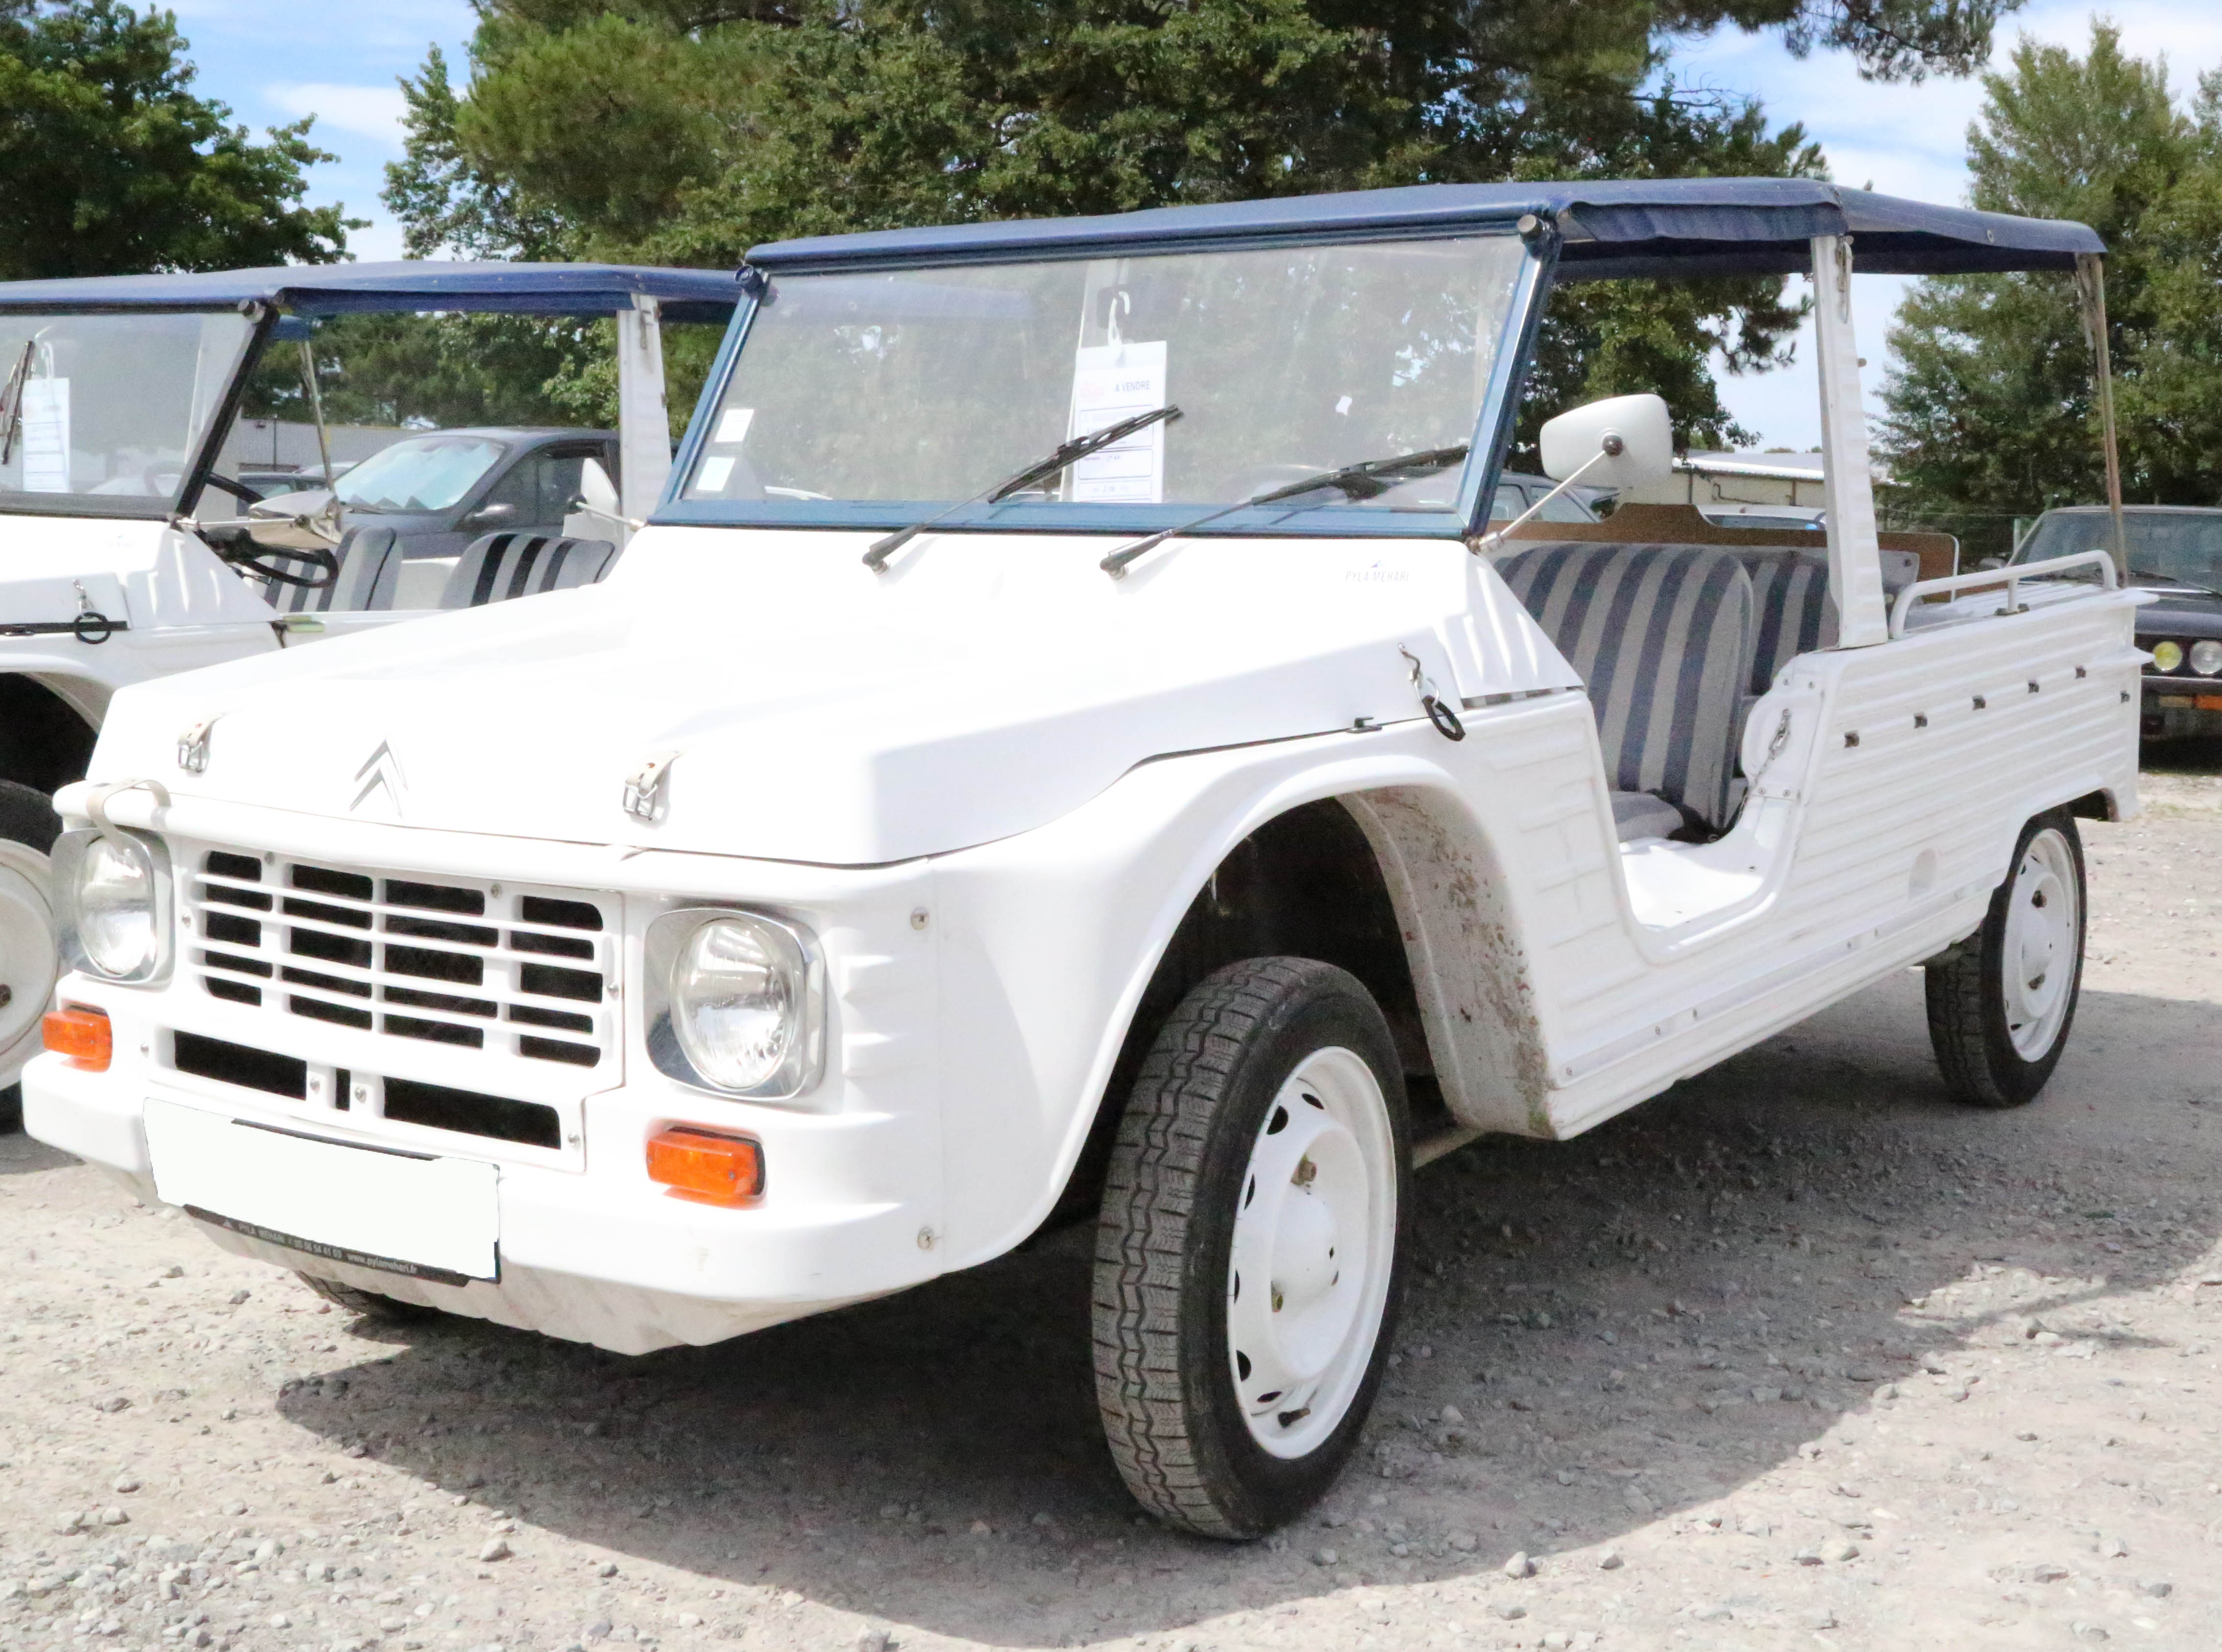 A vendre Citroën Méhari blanche et bleue de 1978